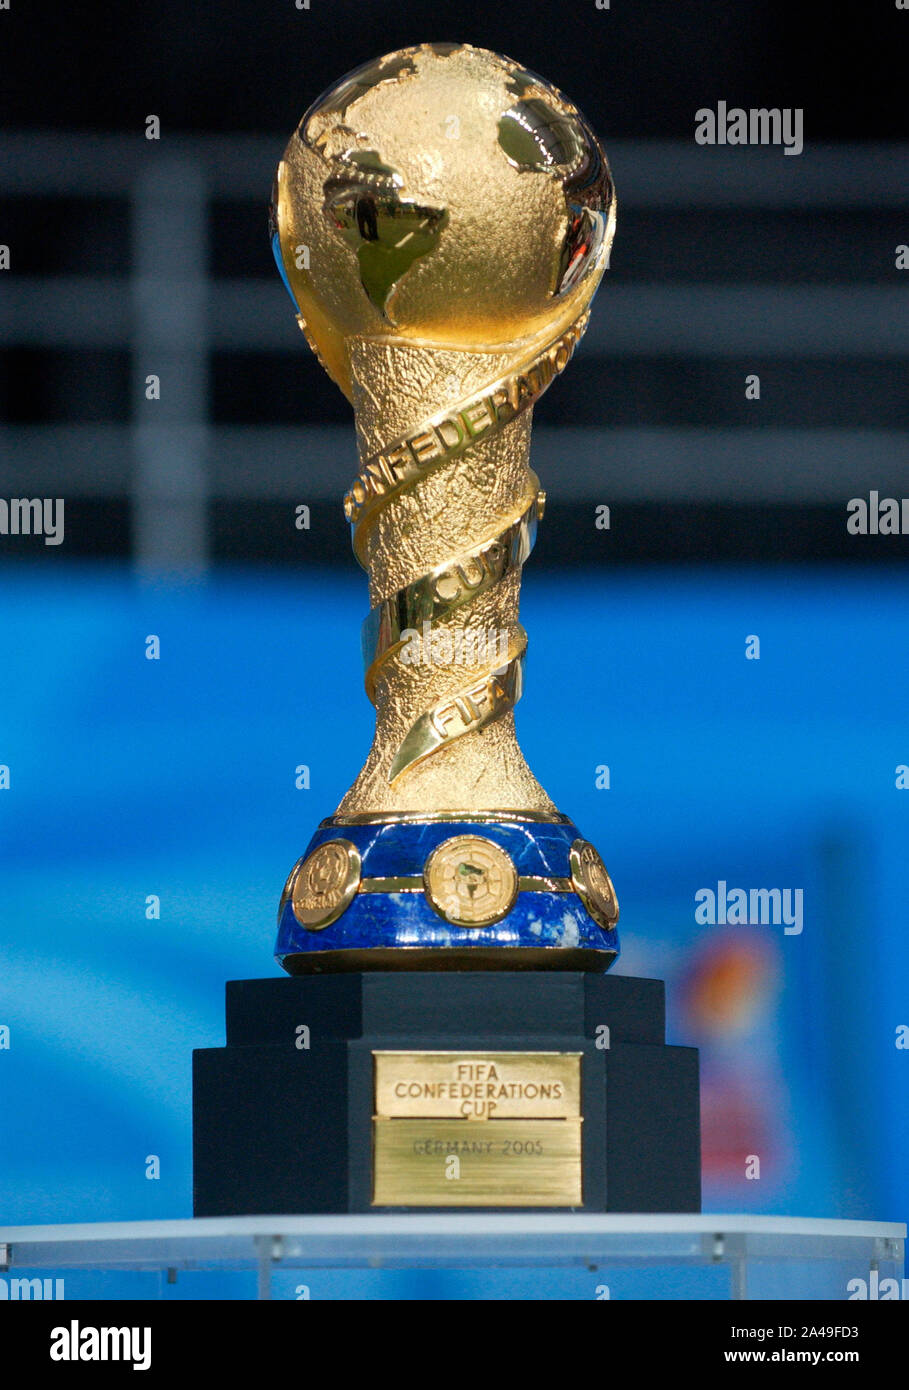 Waldstadion Frankfurt Allemagne, 29.06.2005, Football : Finale de la Coupe  des Confédérations de la FIFA, l'Argentine (ARG, bleu) vs Brésil (BRA,  jaune) ; confed cup trophy Photo Stock - Alamy